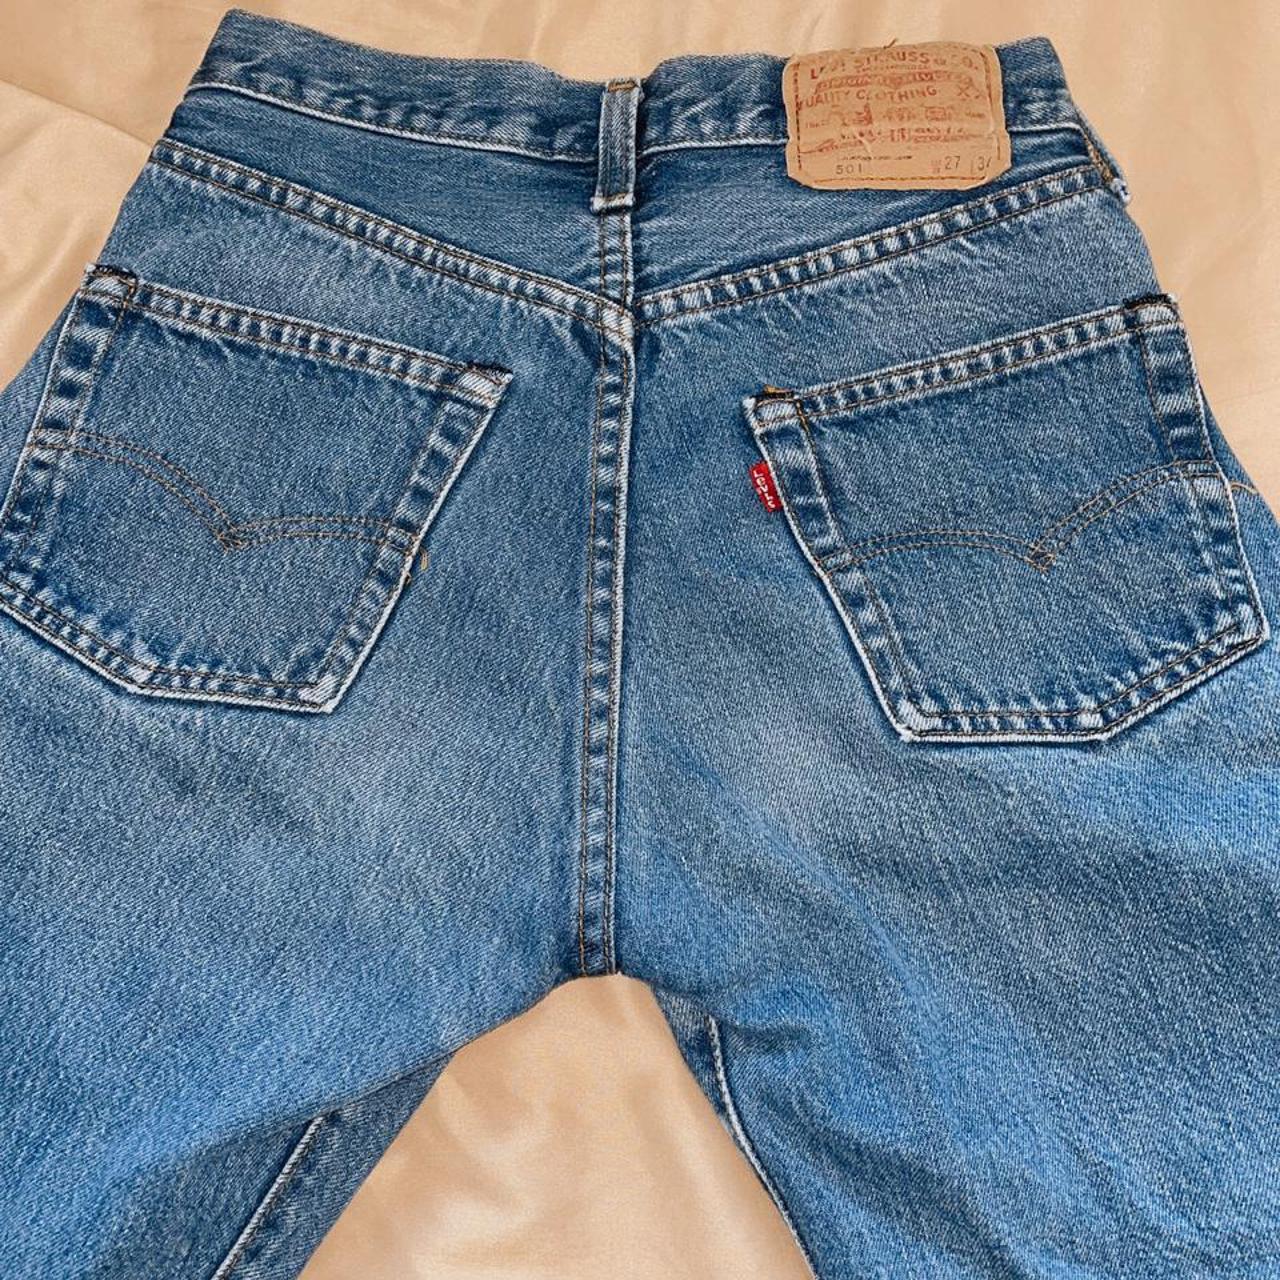 Product Image 3 - vintage 1990s levi’s 501 jeans